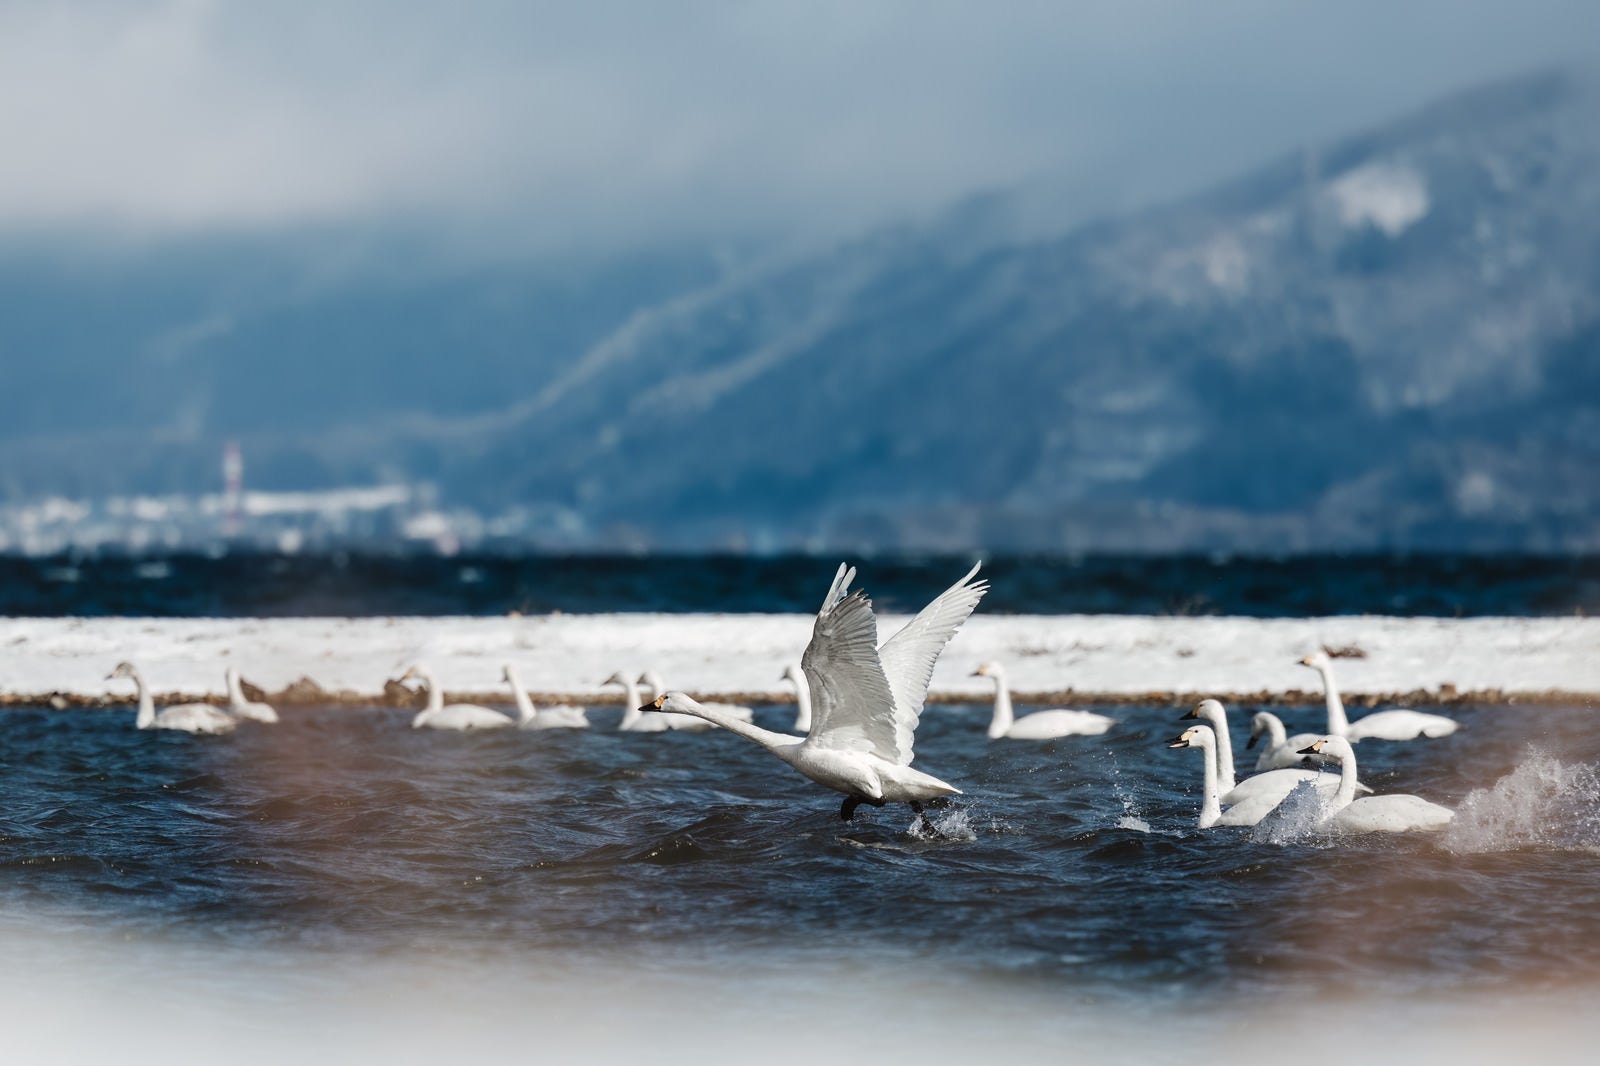 「猪苗代湖で踏み切る白鳥の飛び立ち」の写真